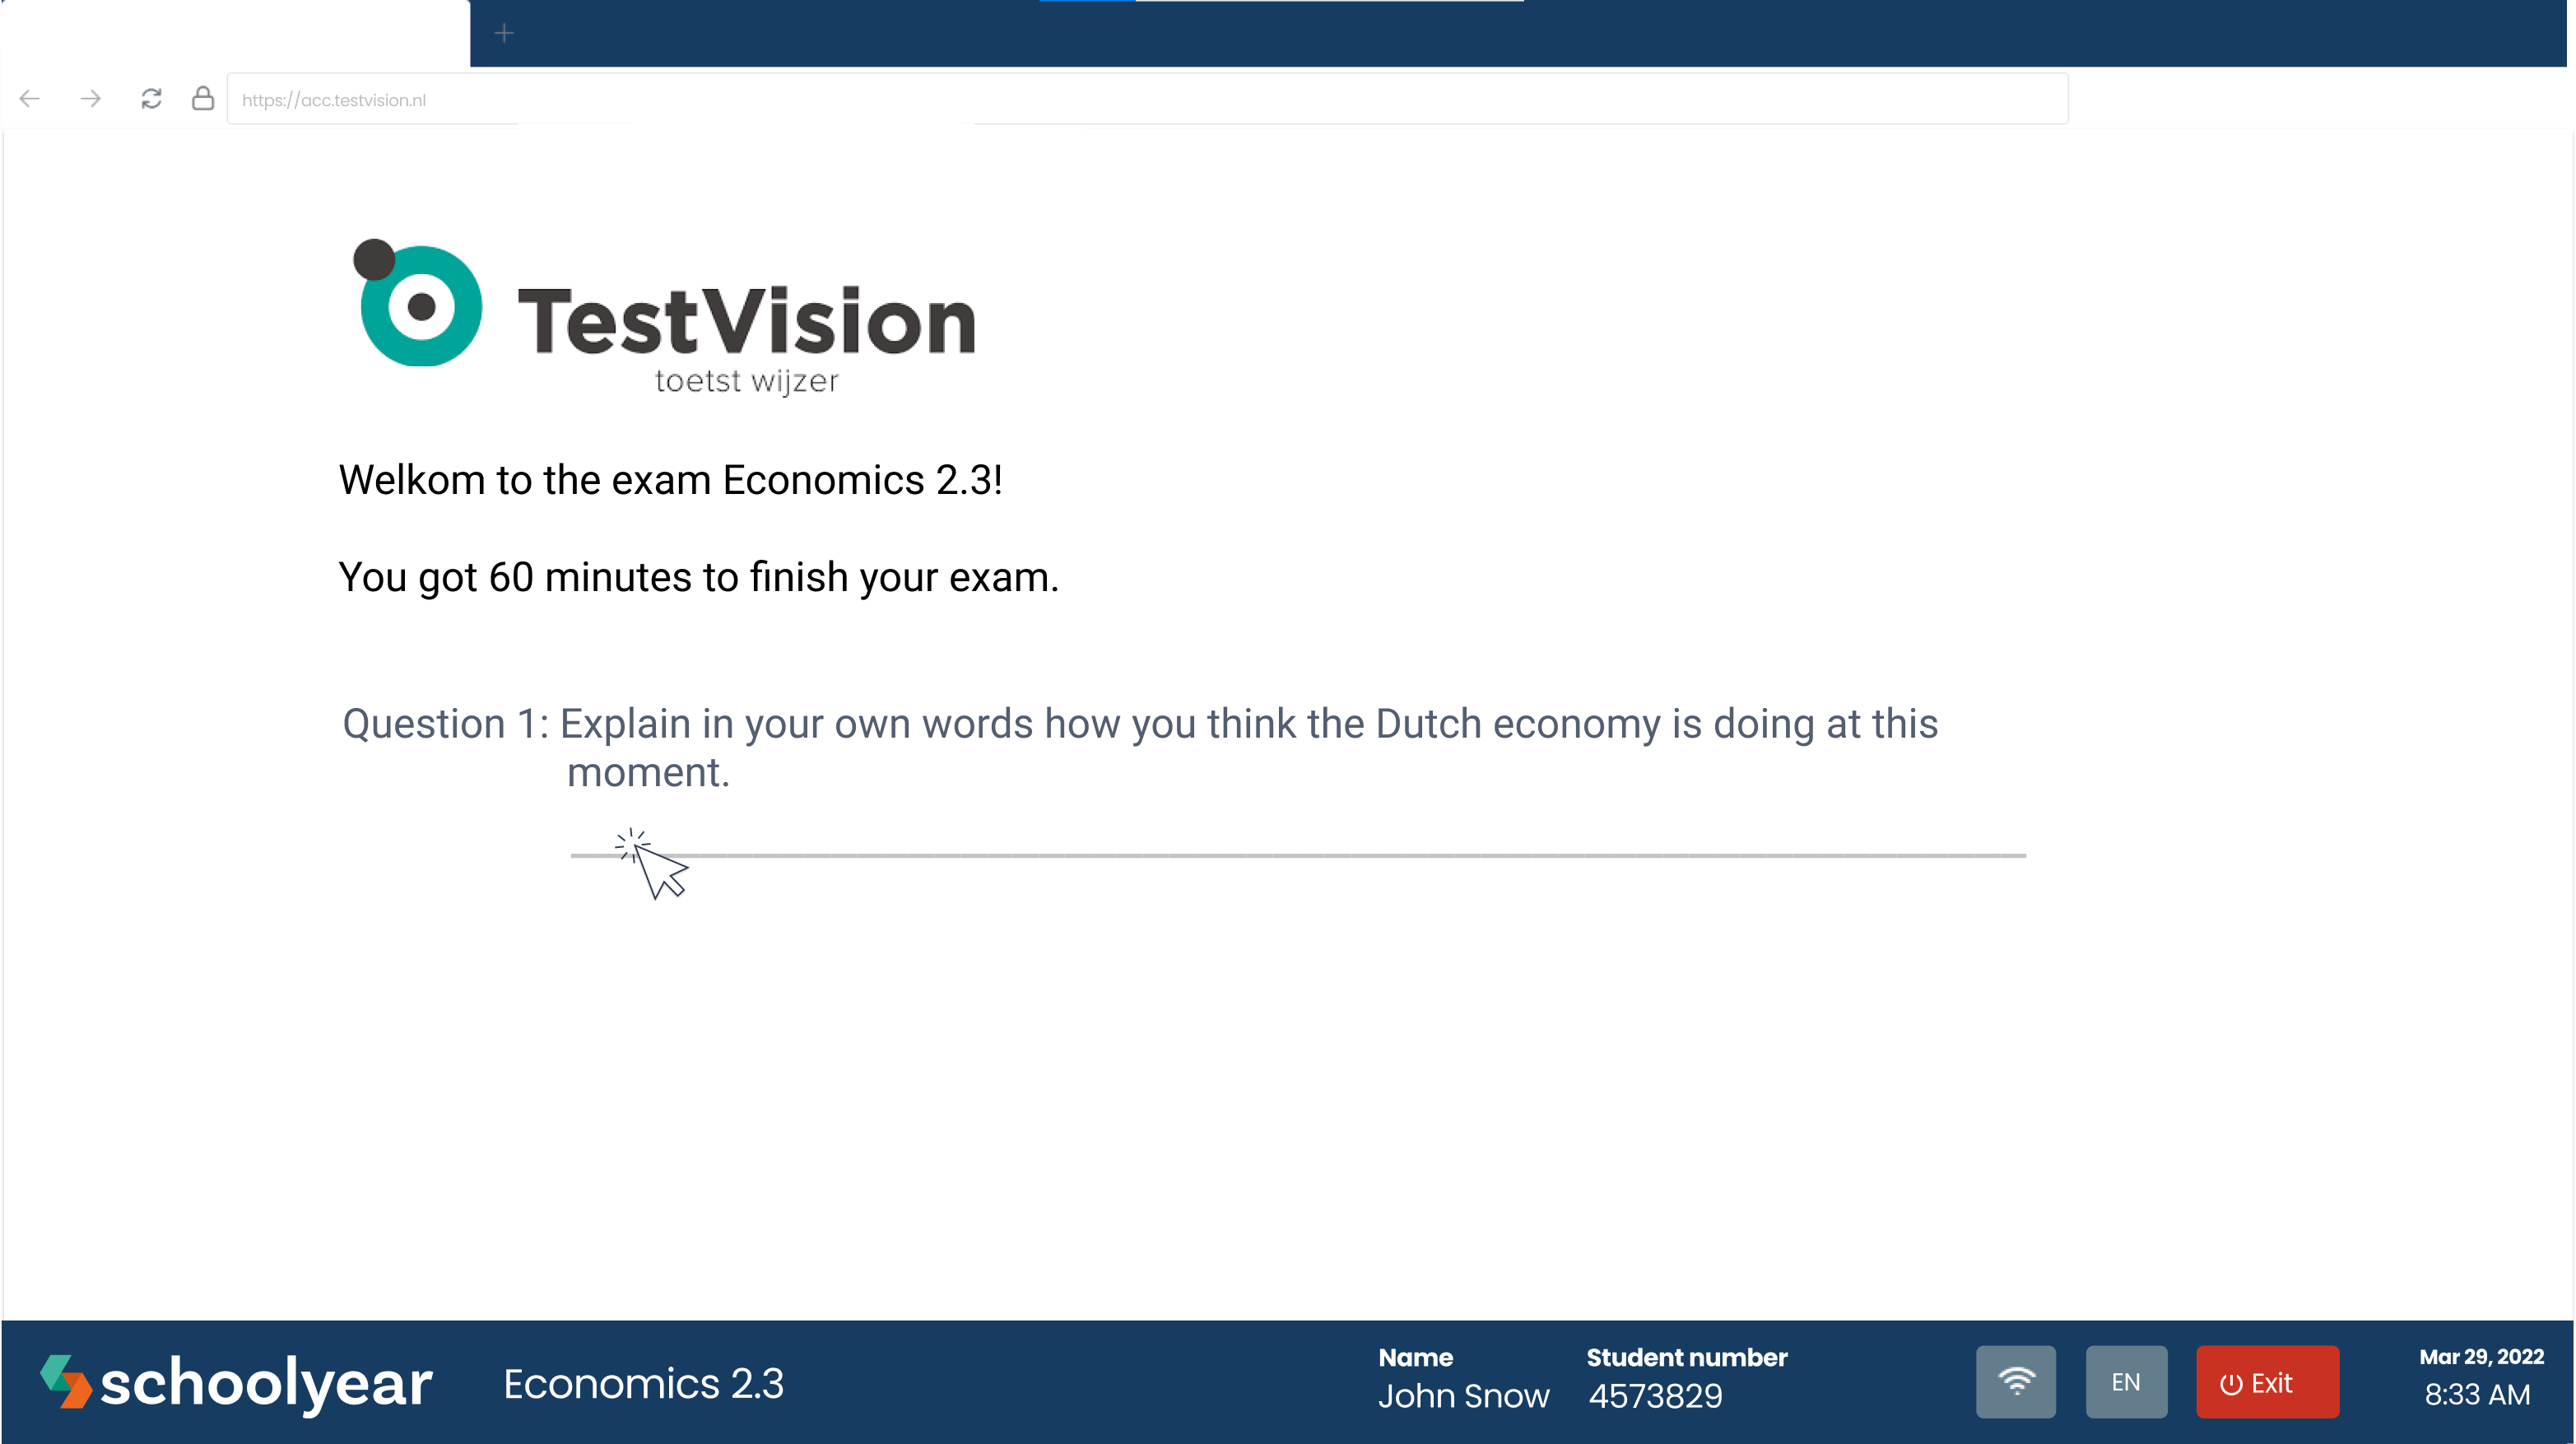 Take_exam_Testvision__EN_8.png